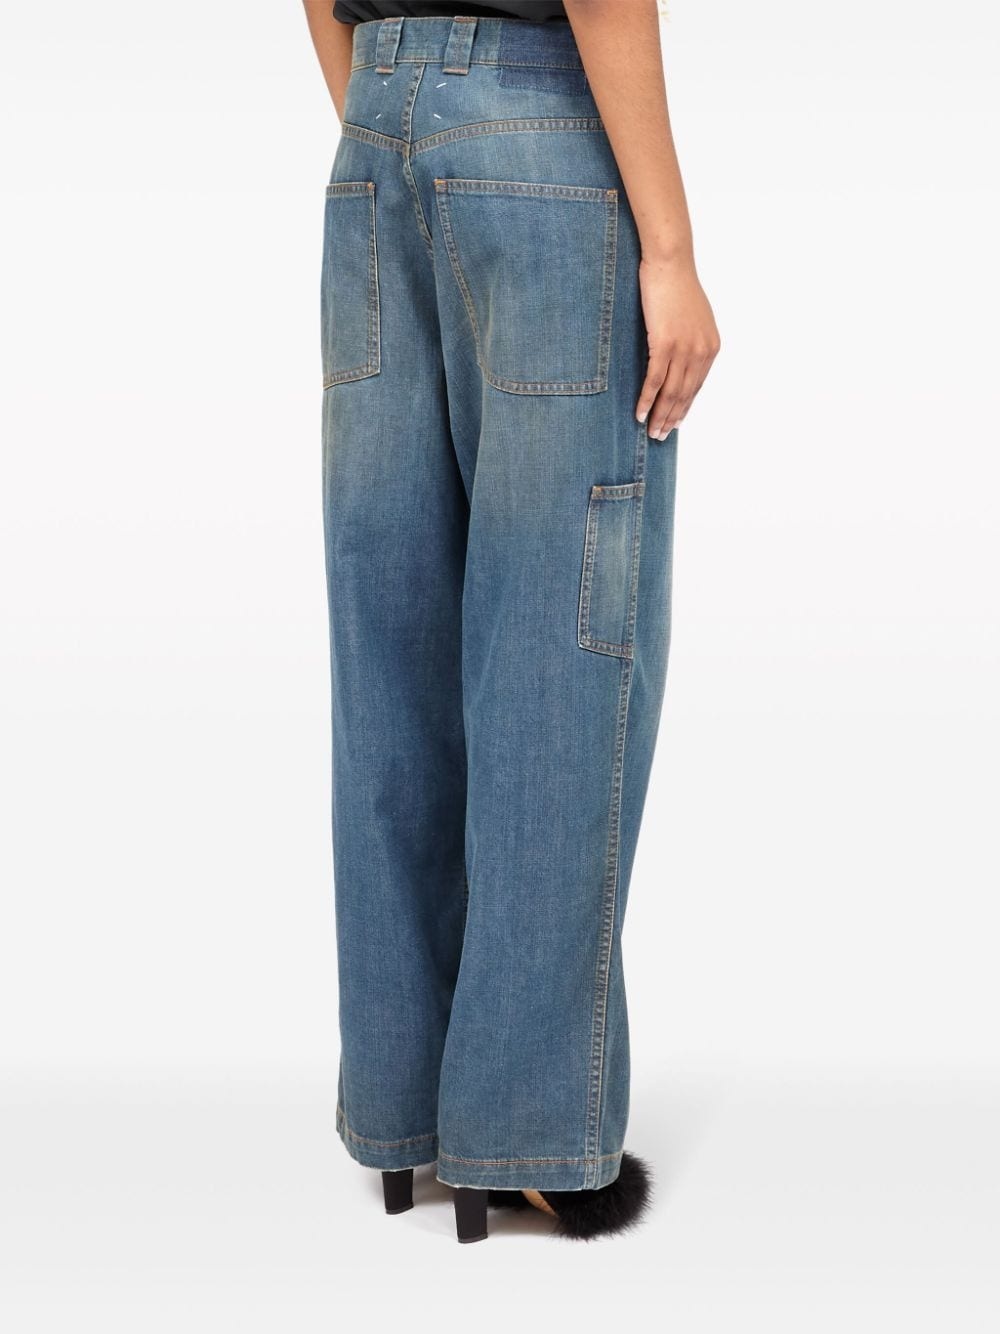 Denim cotton jeans - 4